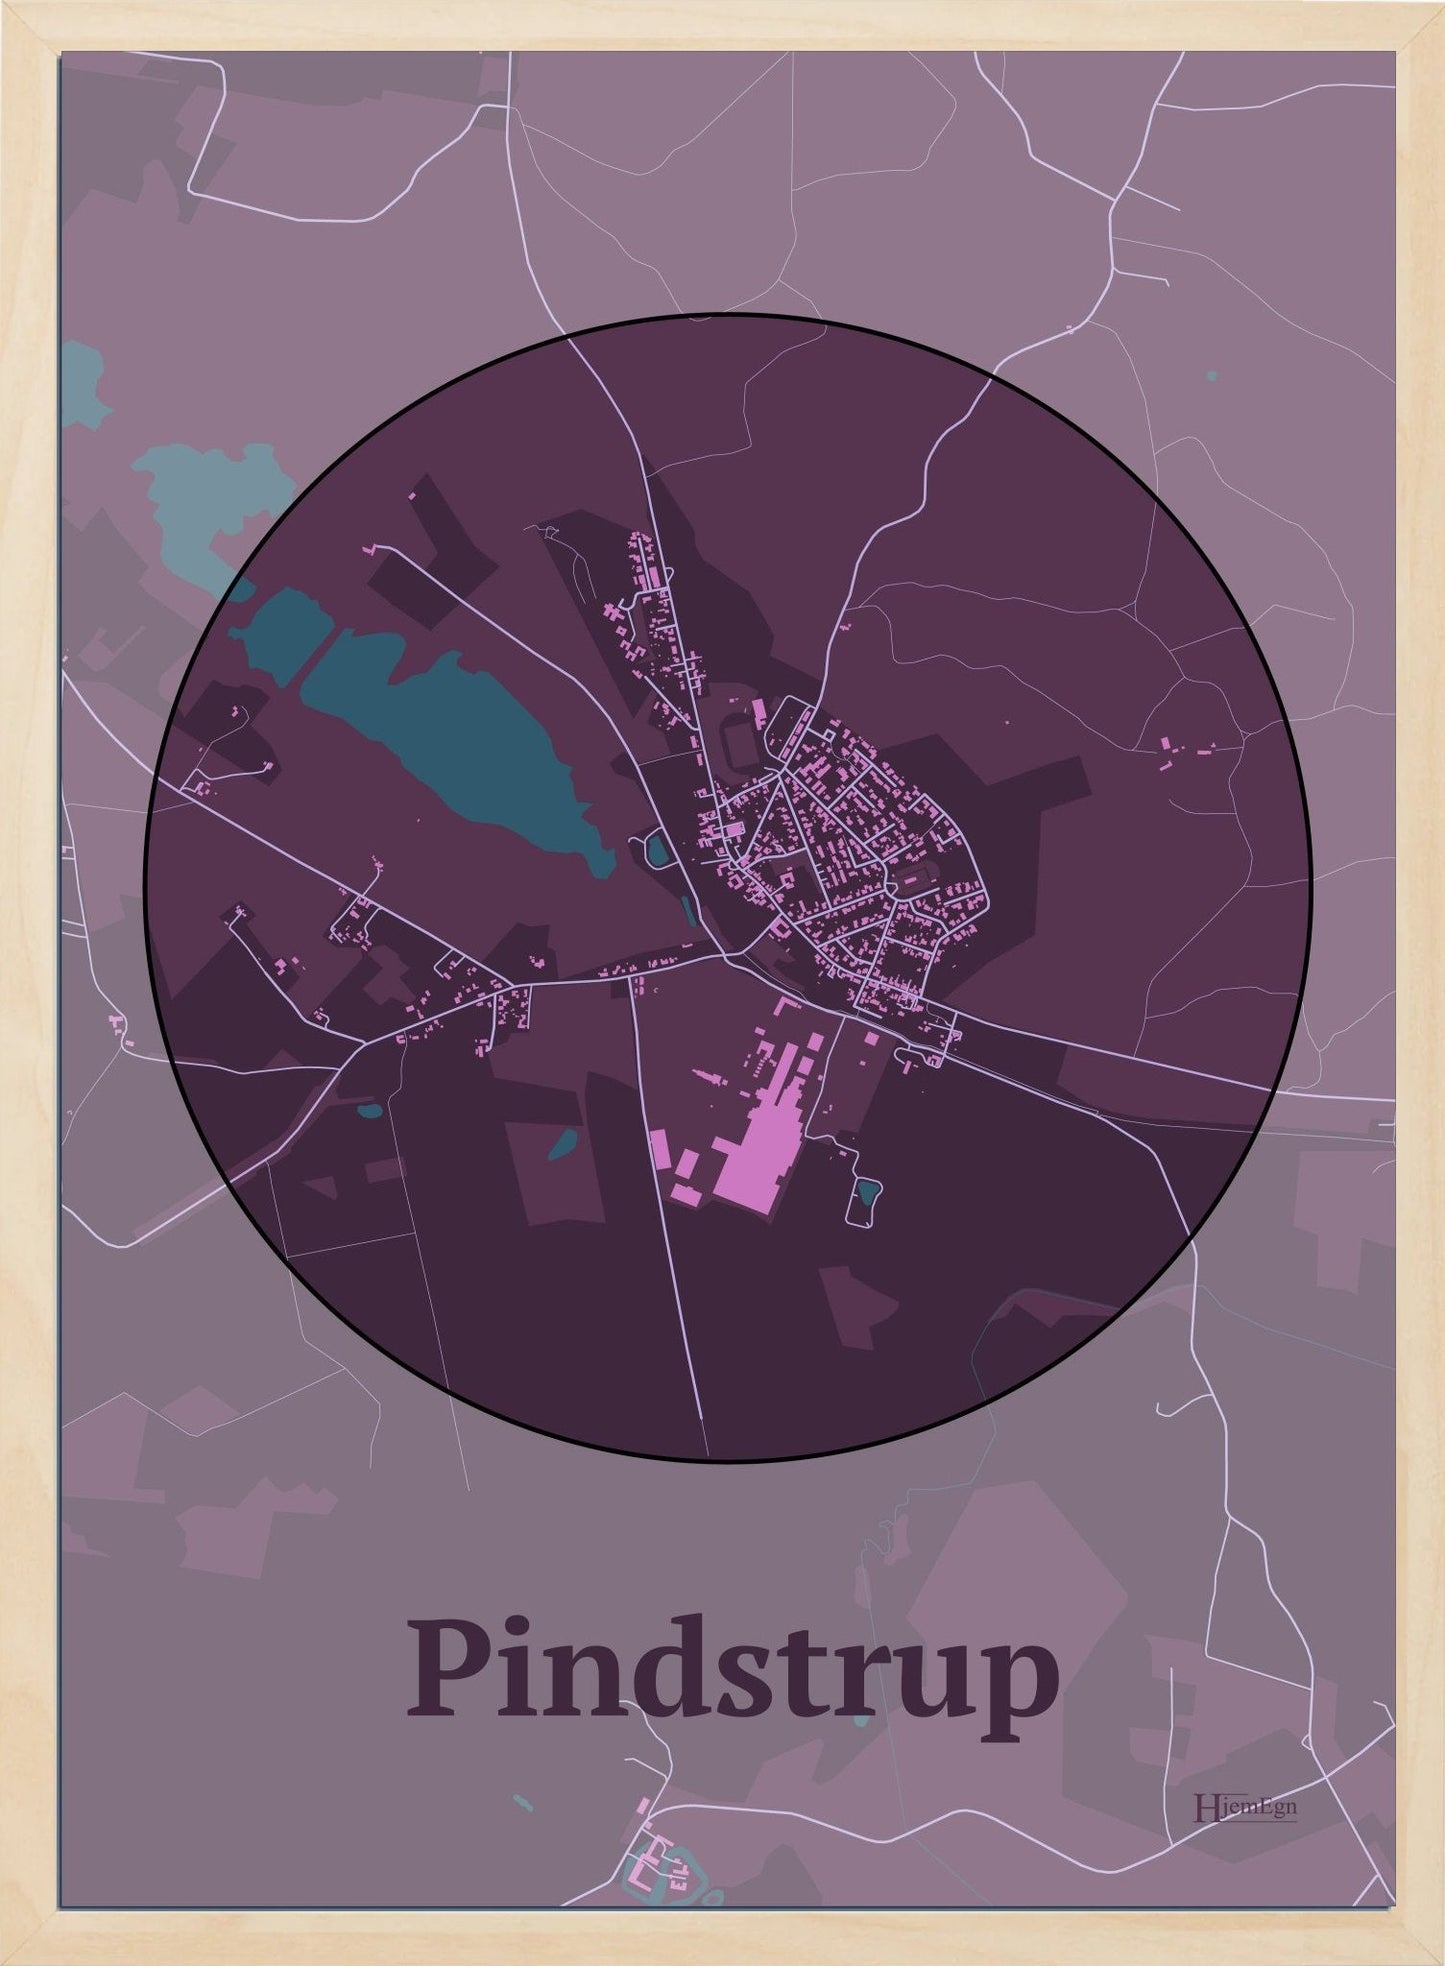 Pindstrup plakat i farve mørk rød og HjemEgn.dk design centrum. Design bykort for Pindstrup